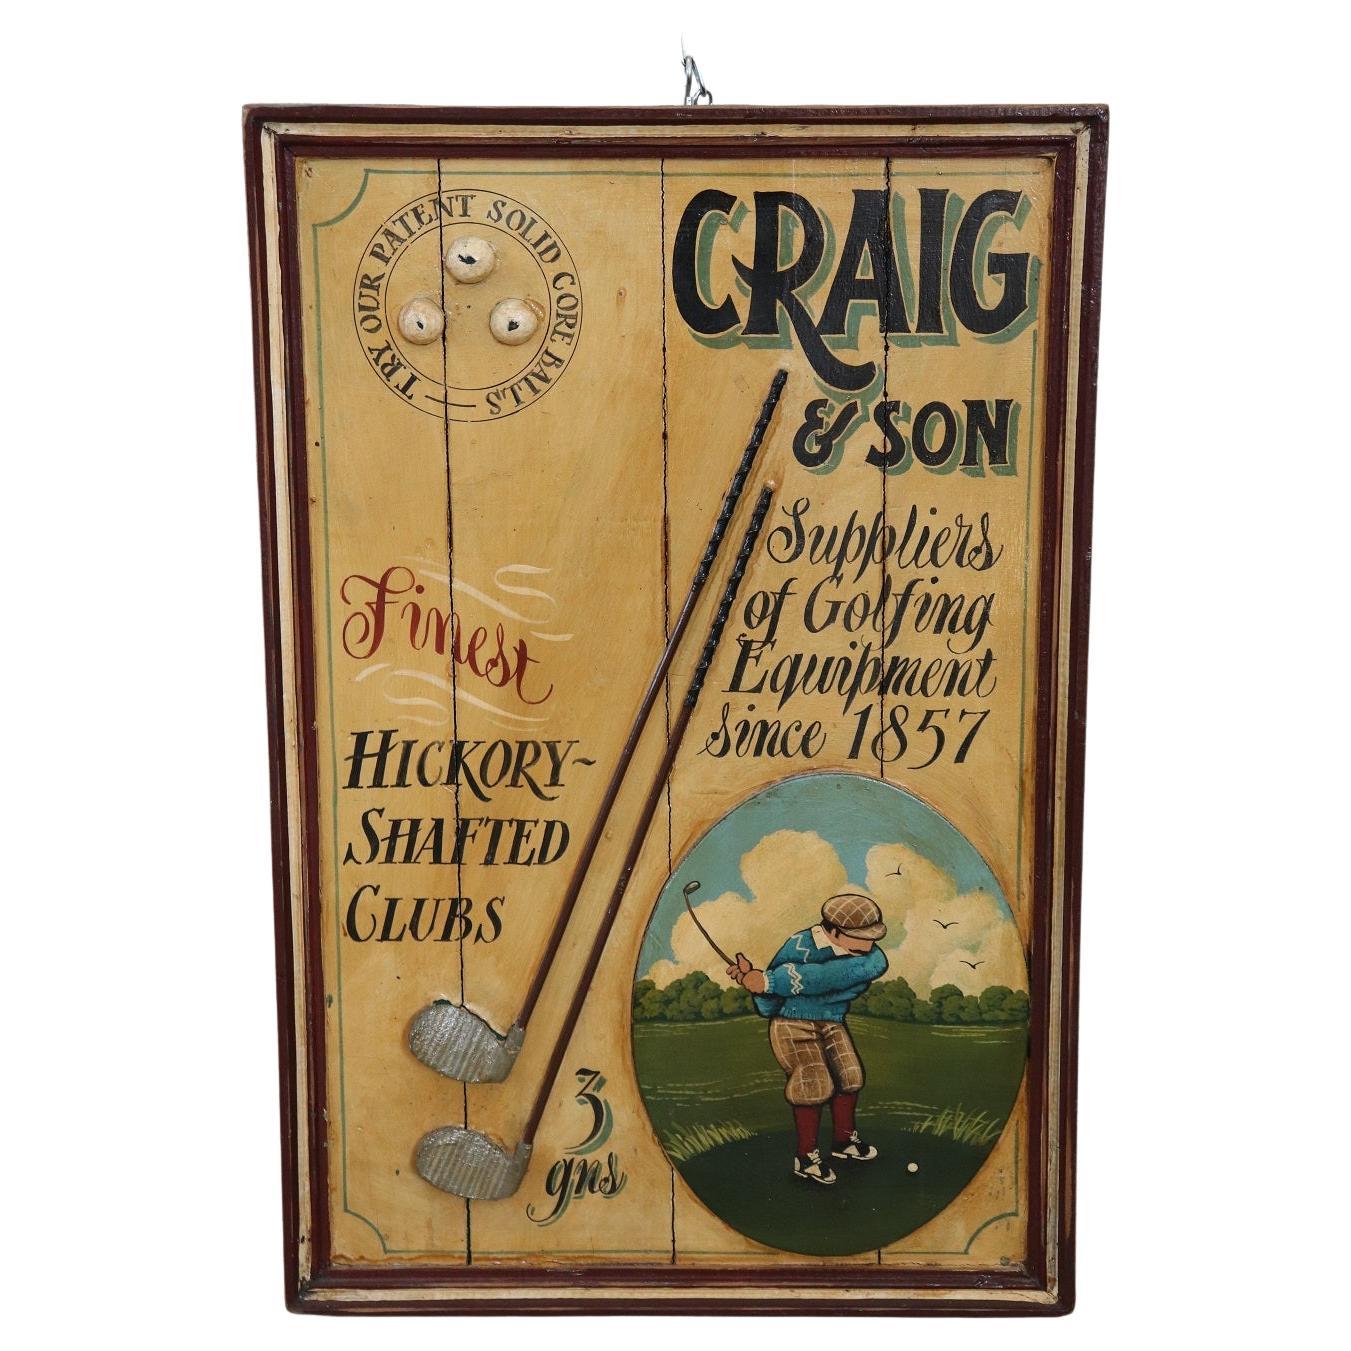 Werbeschild für Golfausrüstung, handbemalt auf Holz, Vintage, 1920er Jahre